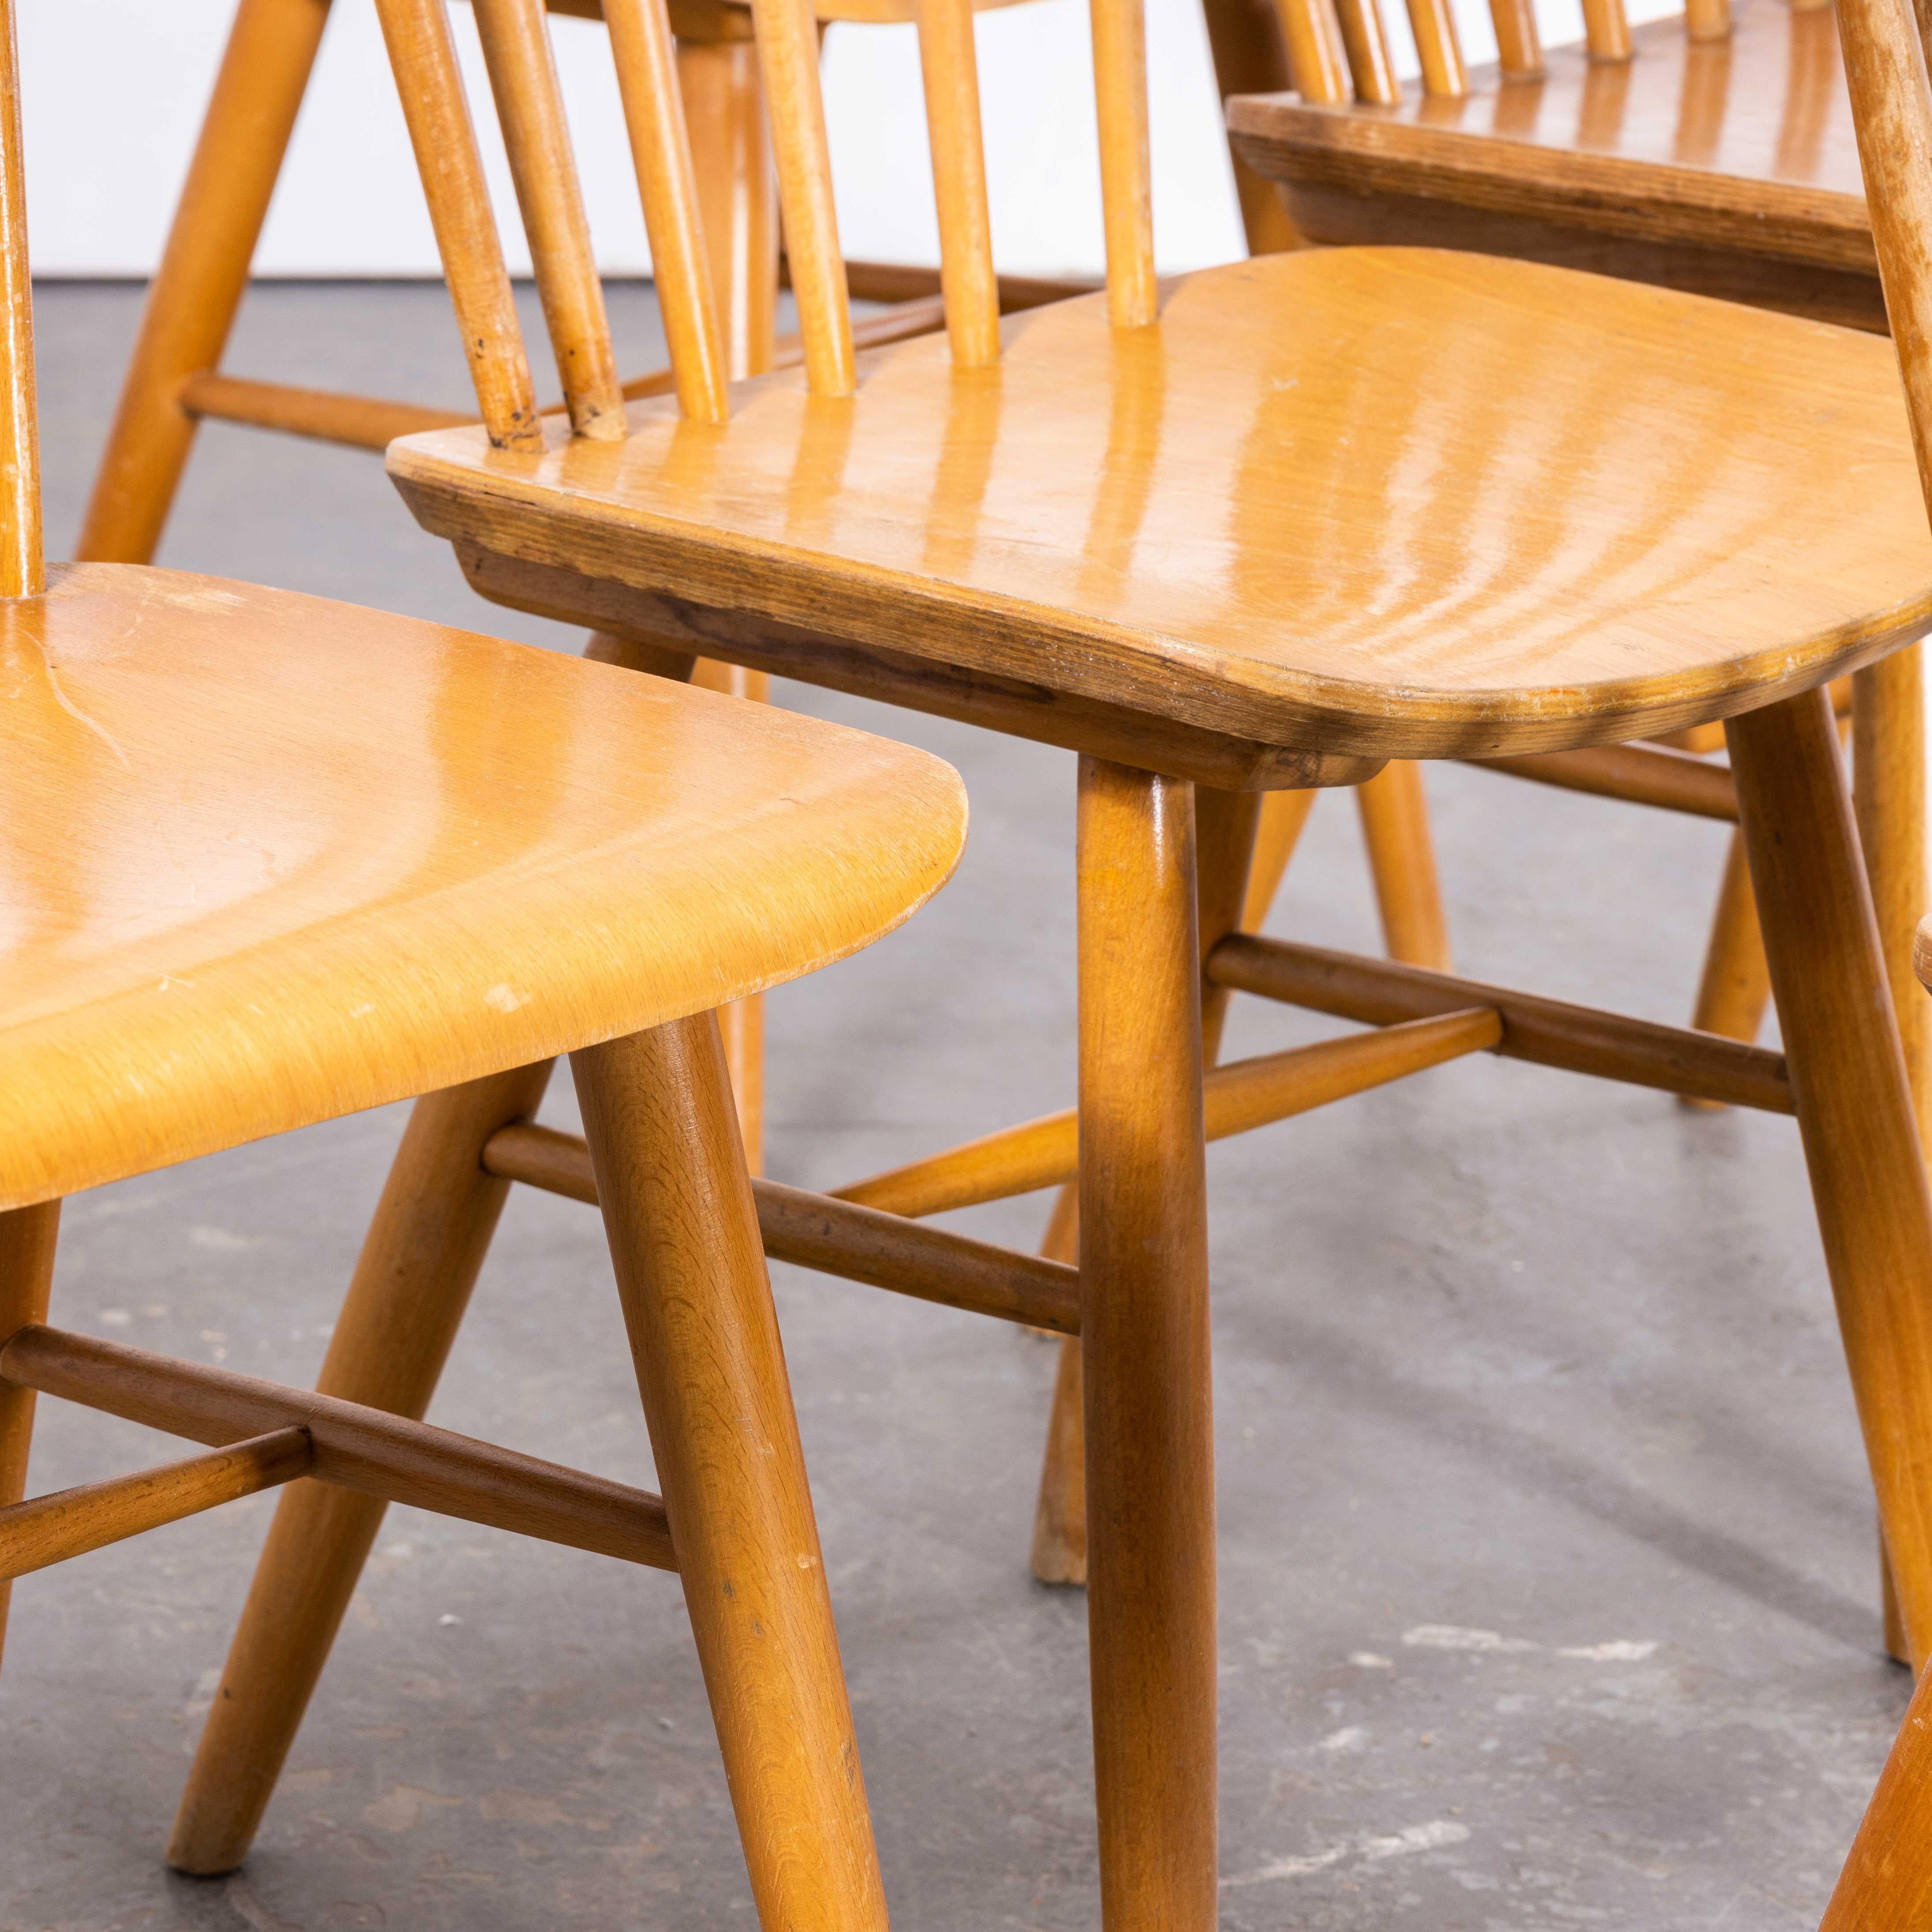 Harlequin Stickback Dining Chairs By Ton 1950 - Set Of Six
Harlequin Stickback Dining Chairs By Ton des années 1950 - Lot de six. Ces chaises ont été fabriquées par la célèbre entreprise tchèque Ton, issue après la guerre de la célèbre usine Thonet